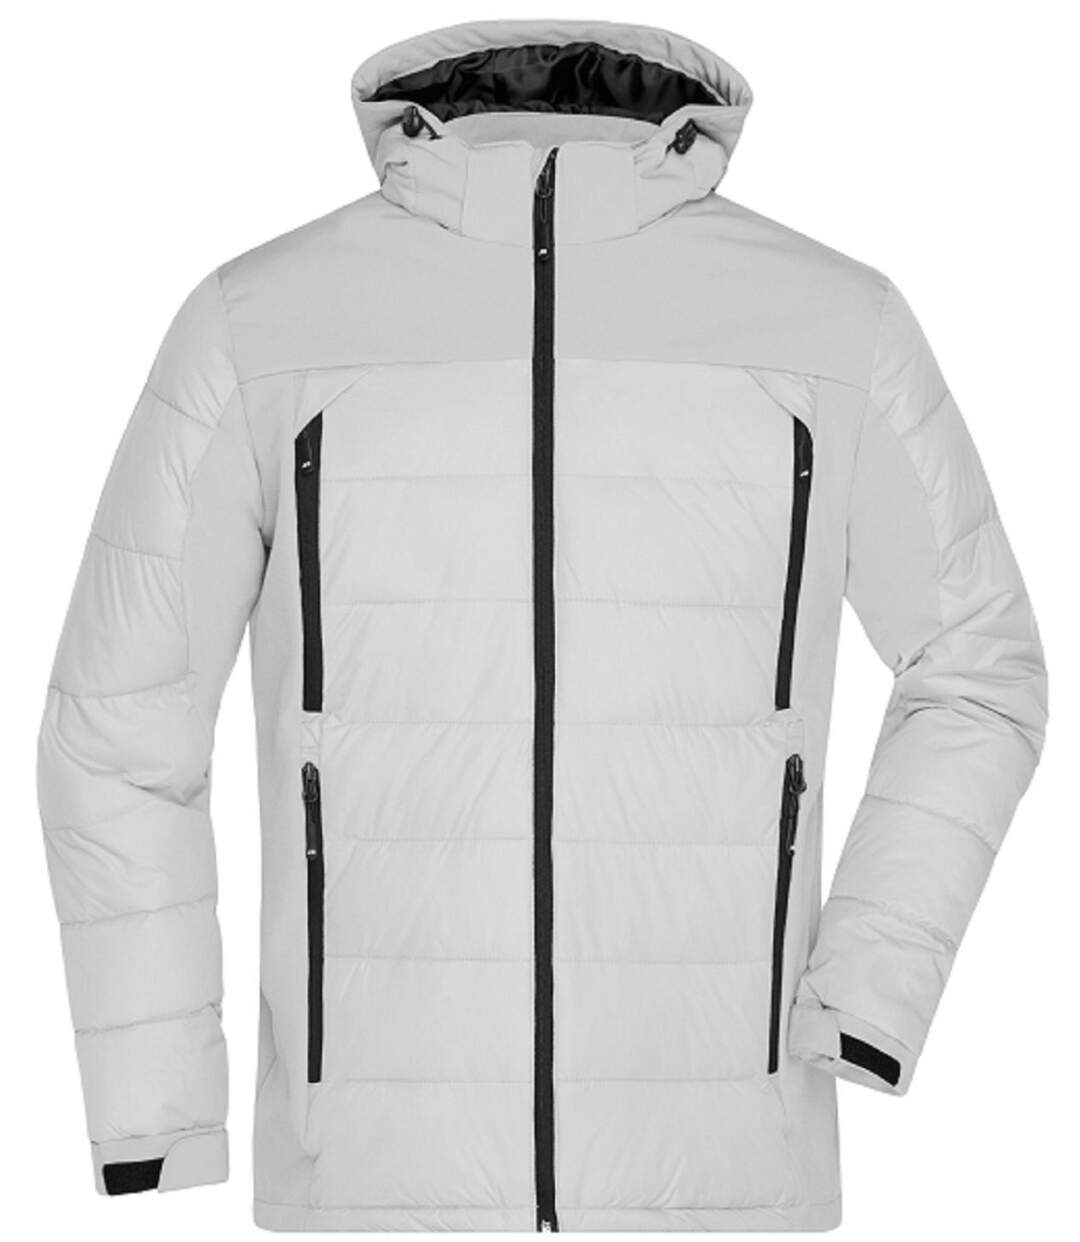 Veste matelassée Homme anorak ski / neige - JN1050 - blanc